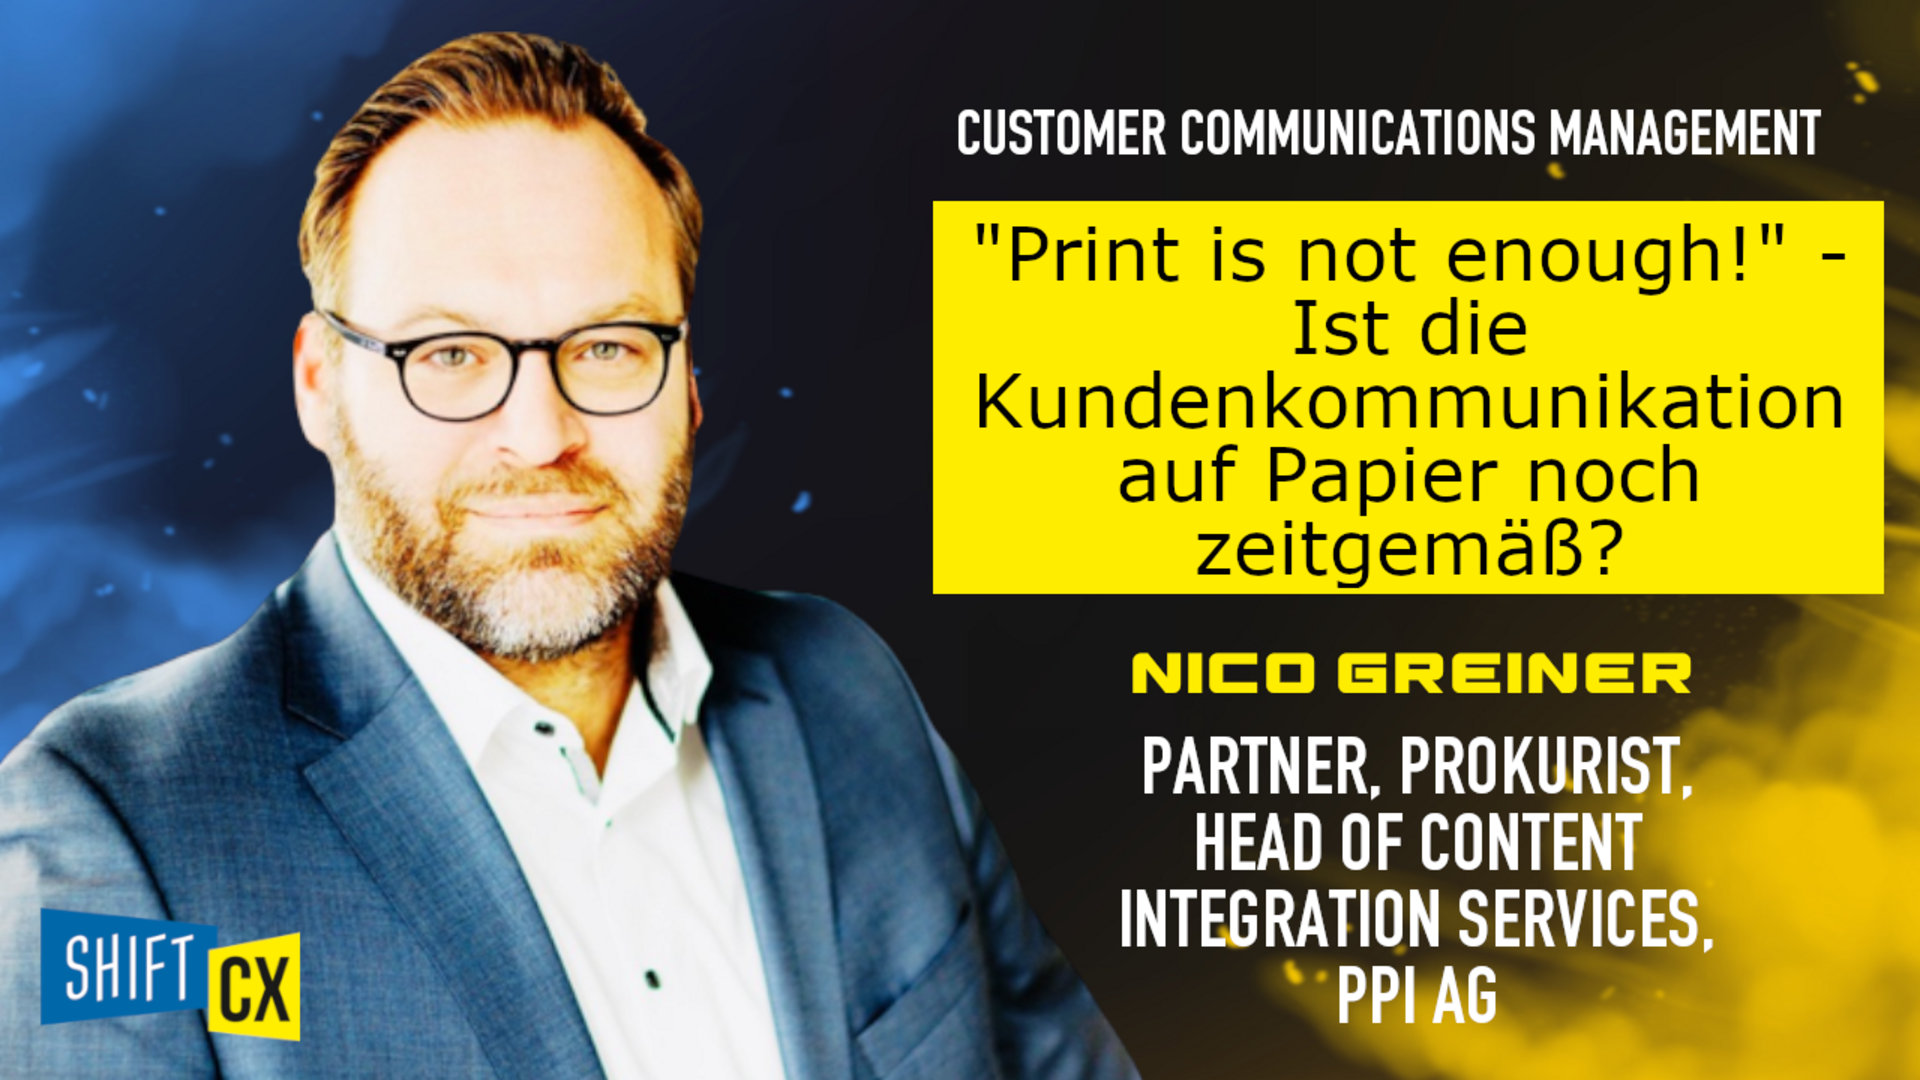 "Print is not enough!" - Ist die Kundenkommunikation auf Papier noch zeitgemäß?